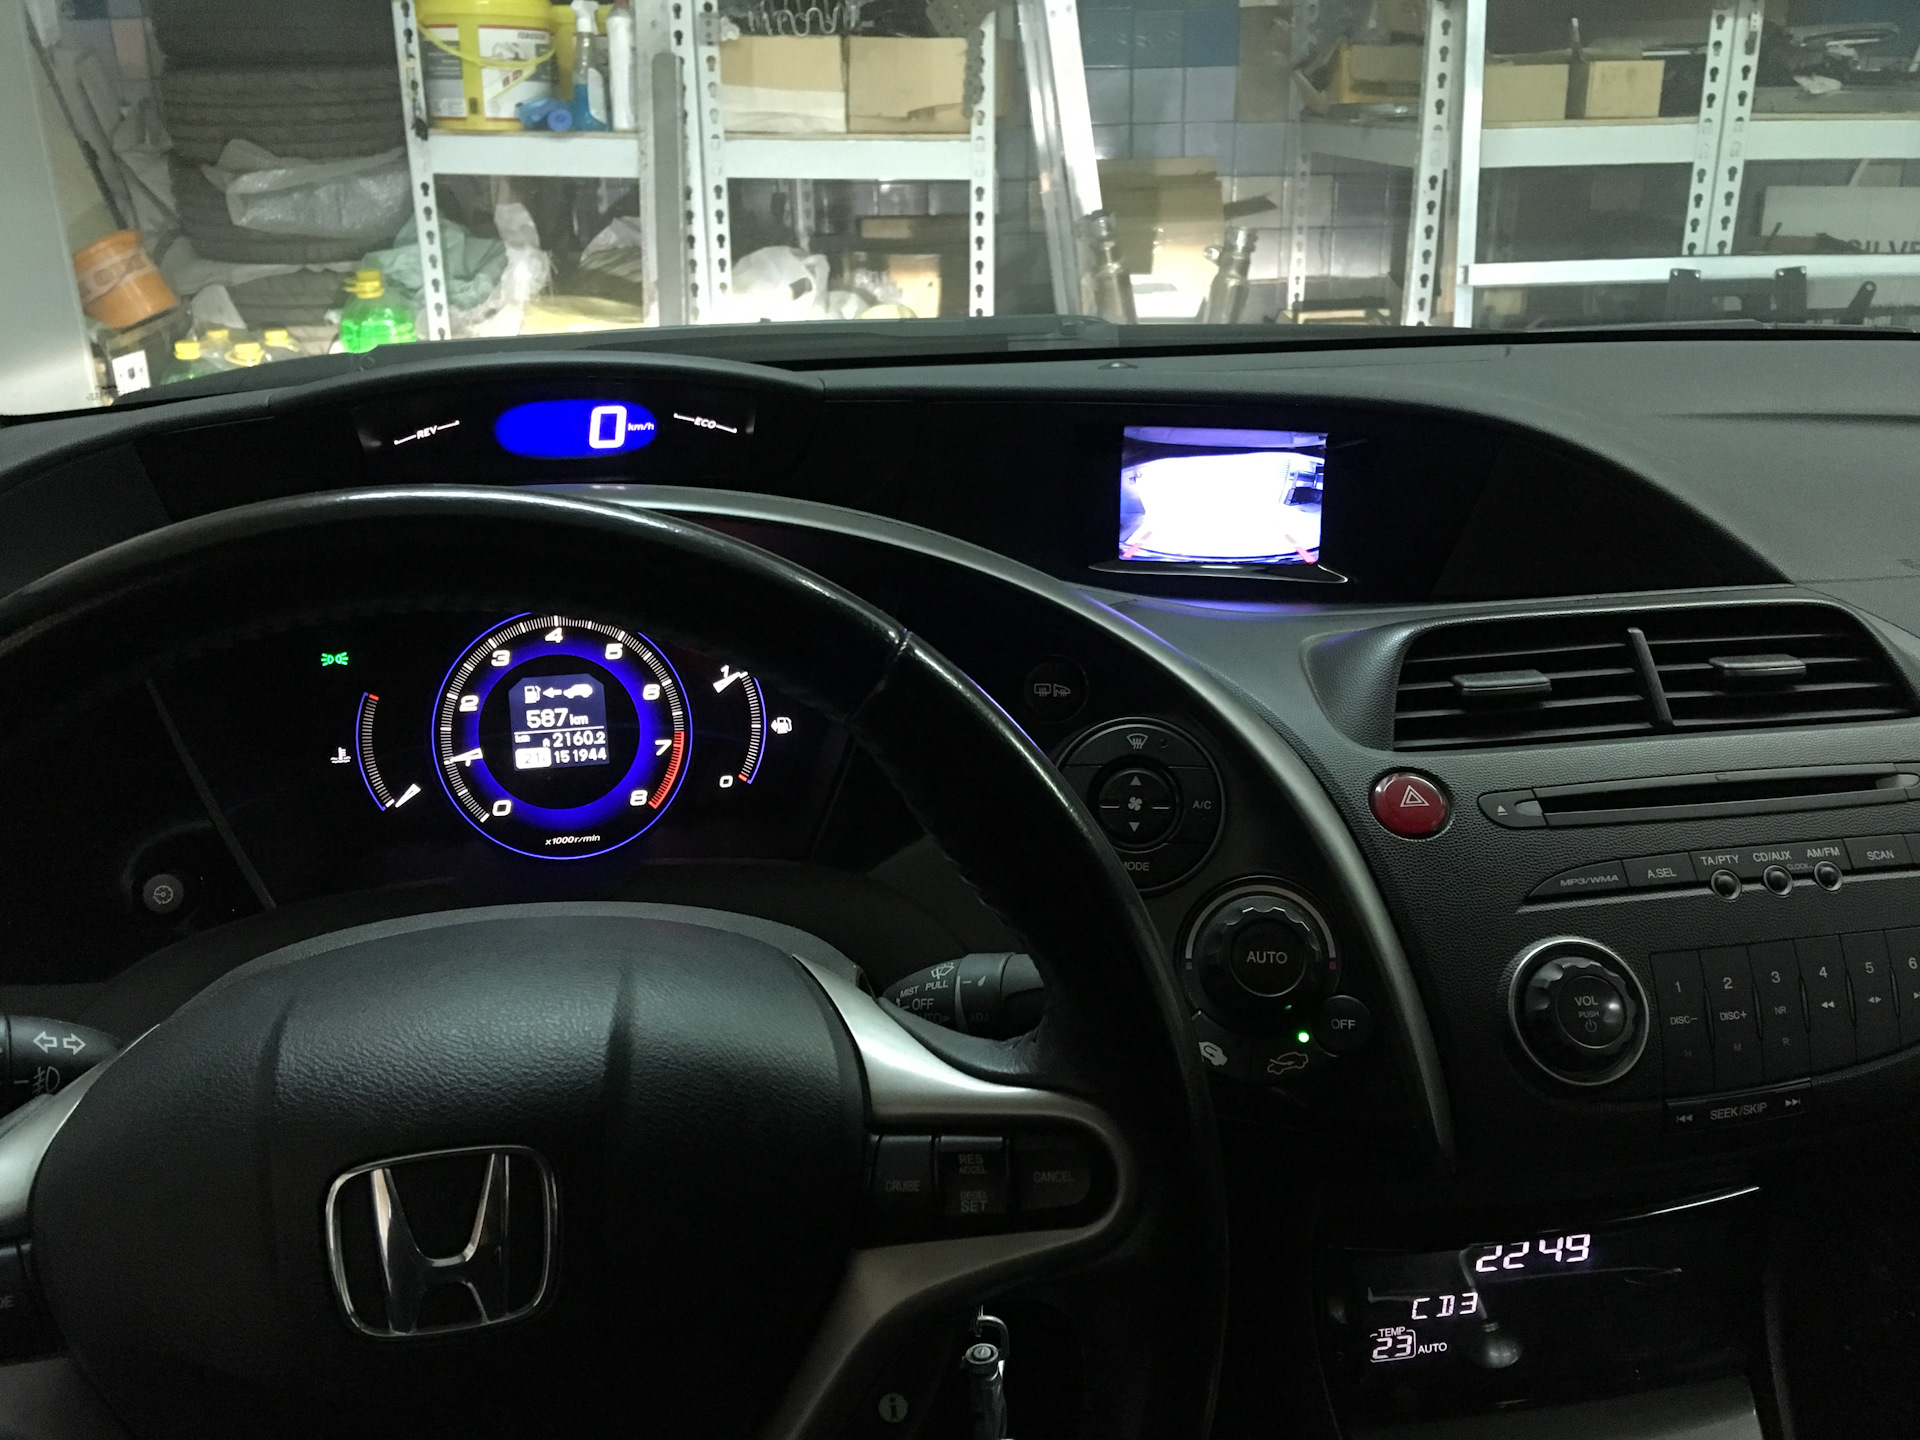 5 д экран. Экран Honda Civic 5d 2008. Honda Civic 2008 монитор. Монитор на Хонда Цивик 5д. Honda Civic 5d дисплей.